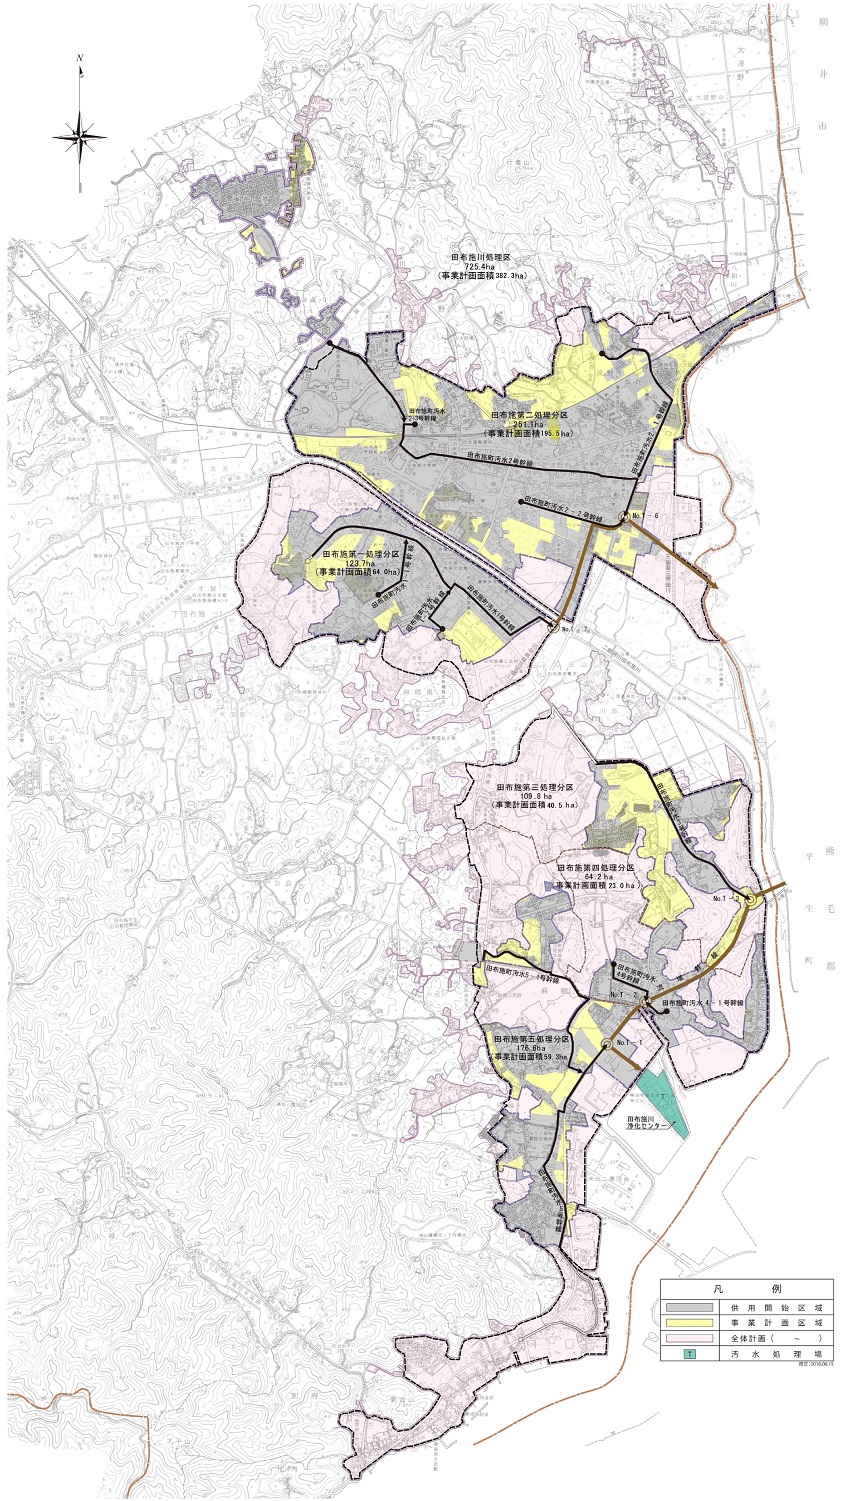 下水道供用開始区域及び事業計画区区域図